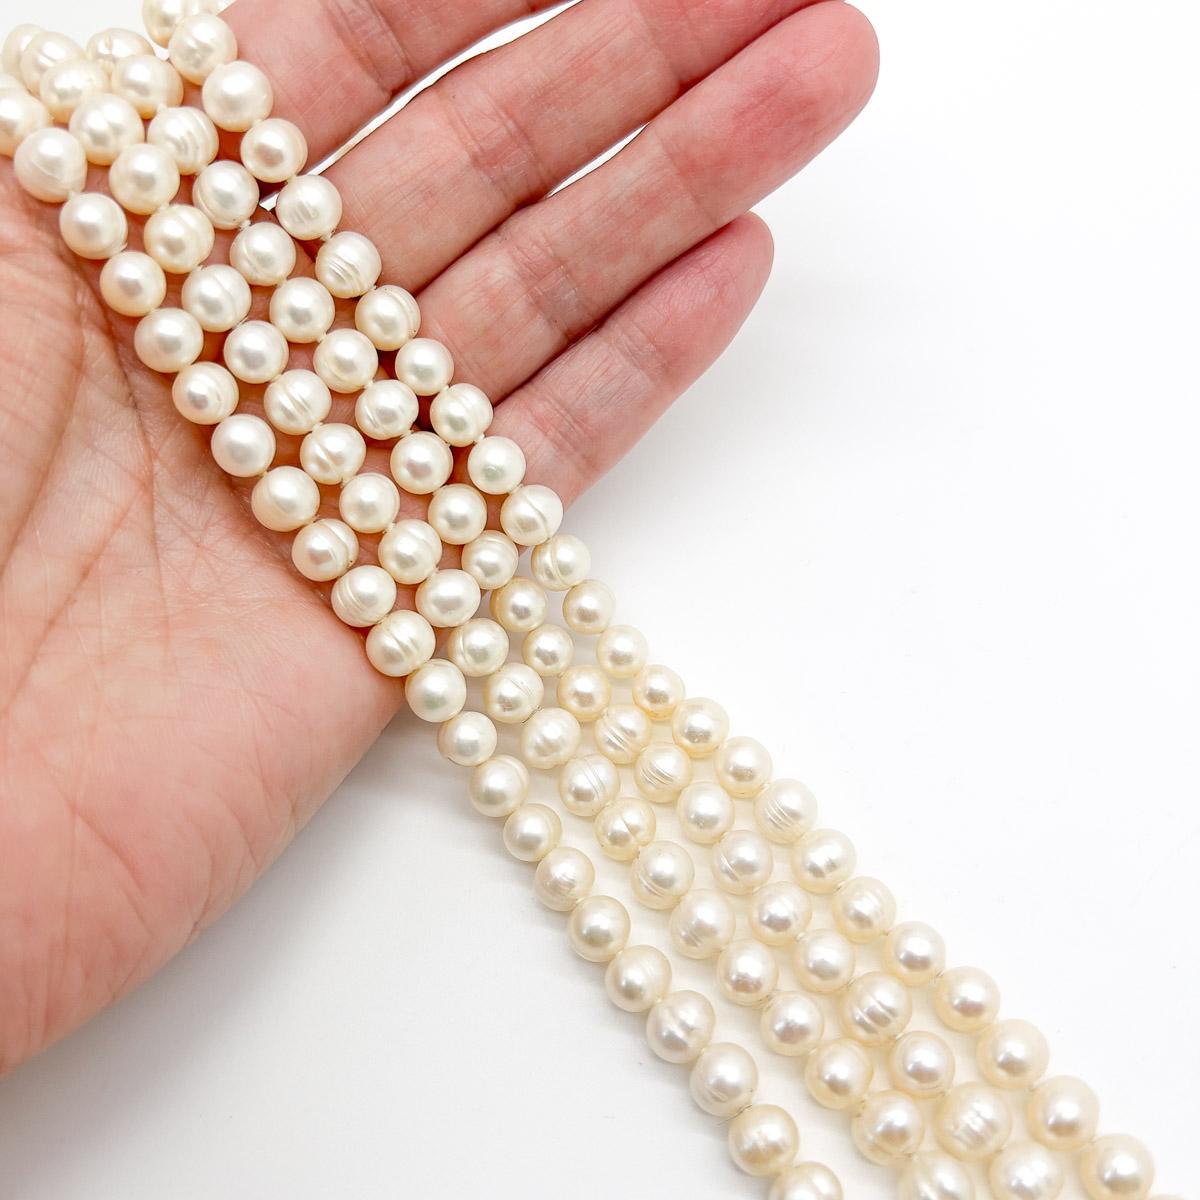 Un fabuleux long collier de perles d'eau douce vintage. L'élément de base du style parfait.
Une beauté non signée. Un trésor rare. Ce n'est pas parce qu'un bijou ne porte pas le nom d'un designer qu'il n'est pas convoité. Les beautés non signées de